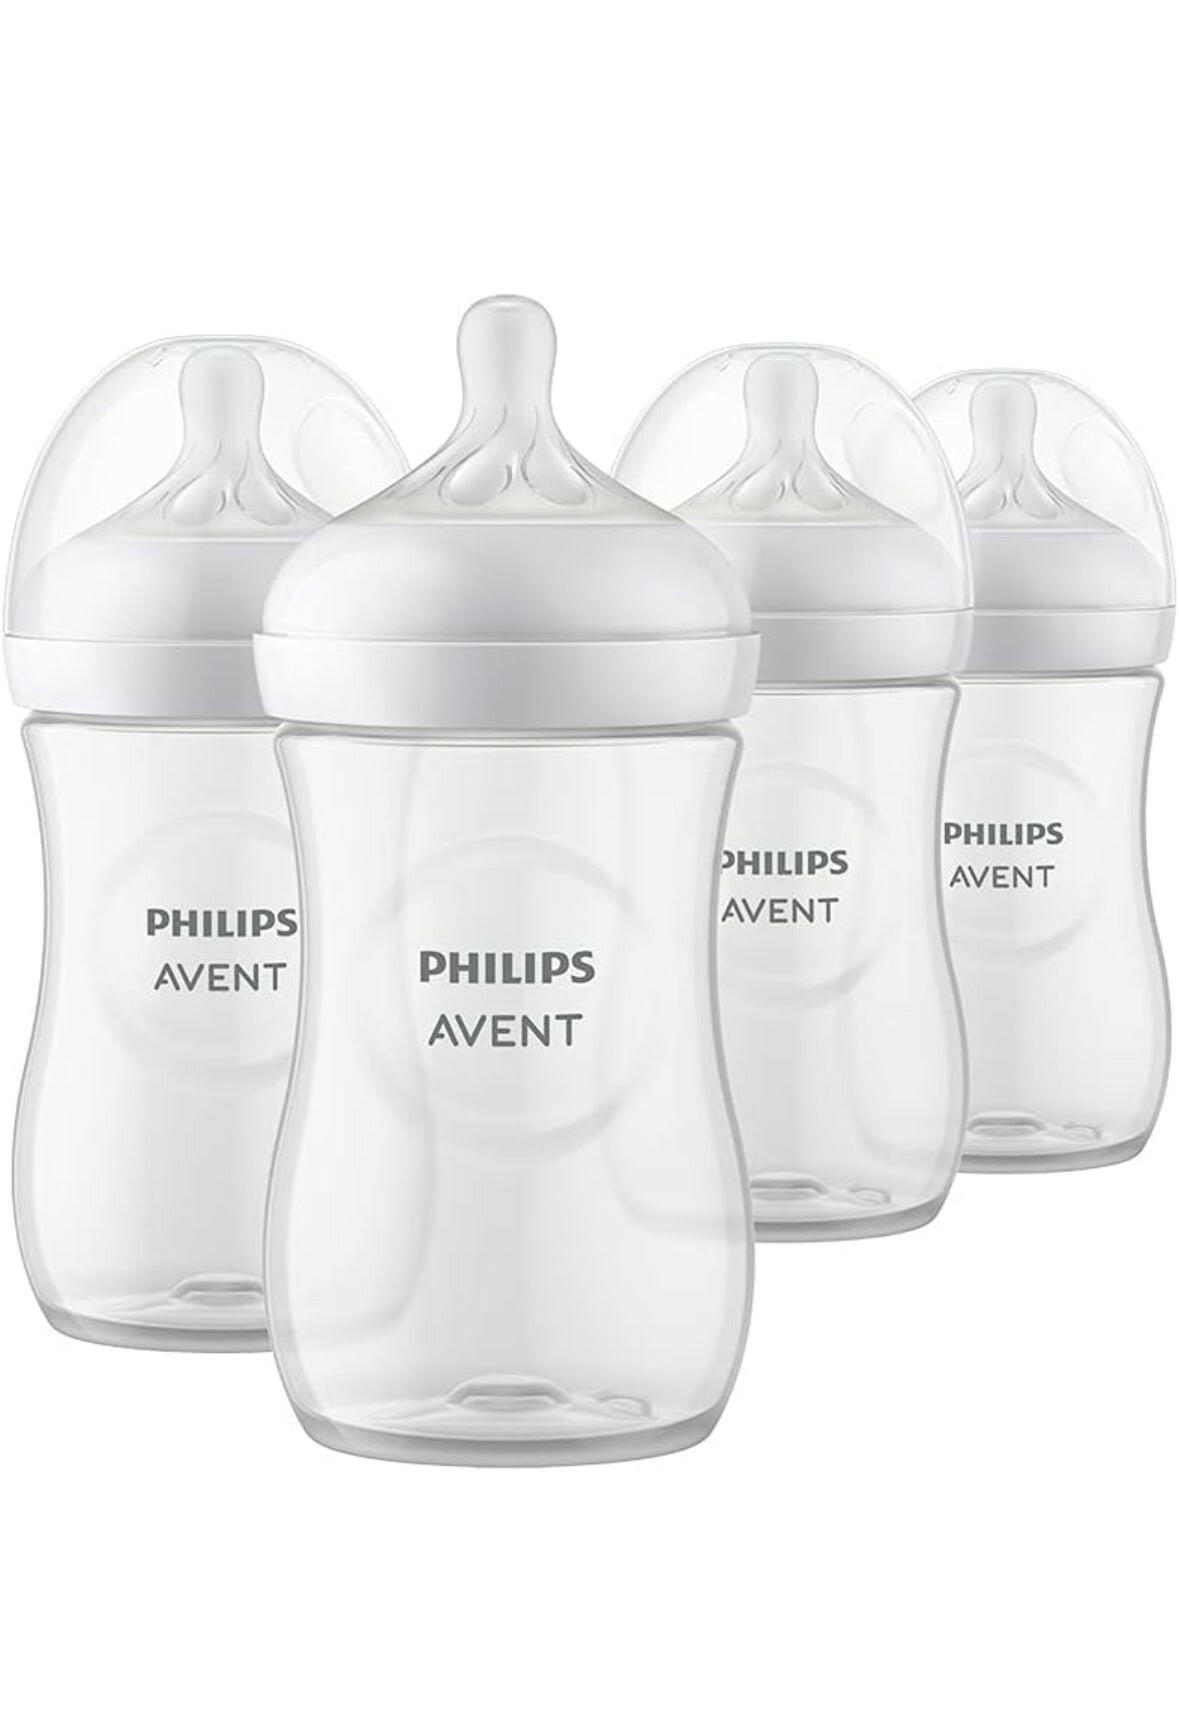 زجاجة فيليبس أفينت الطبيعية للأطفال مع حلمة الاستجابة الطبيعية، شفافة، 9 أونصة، 4 قطع